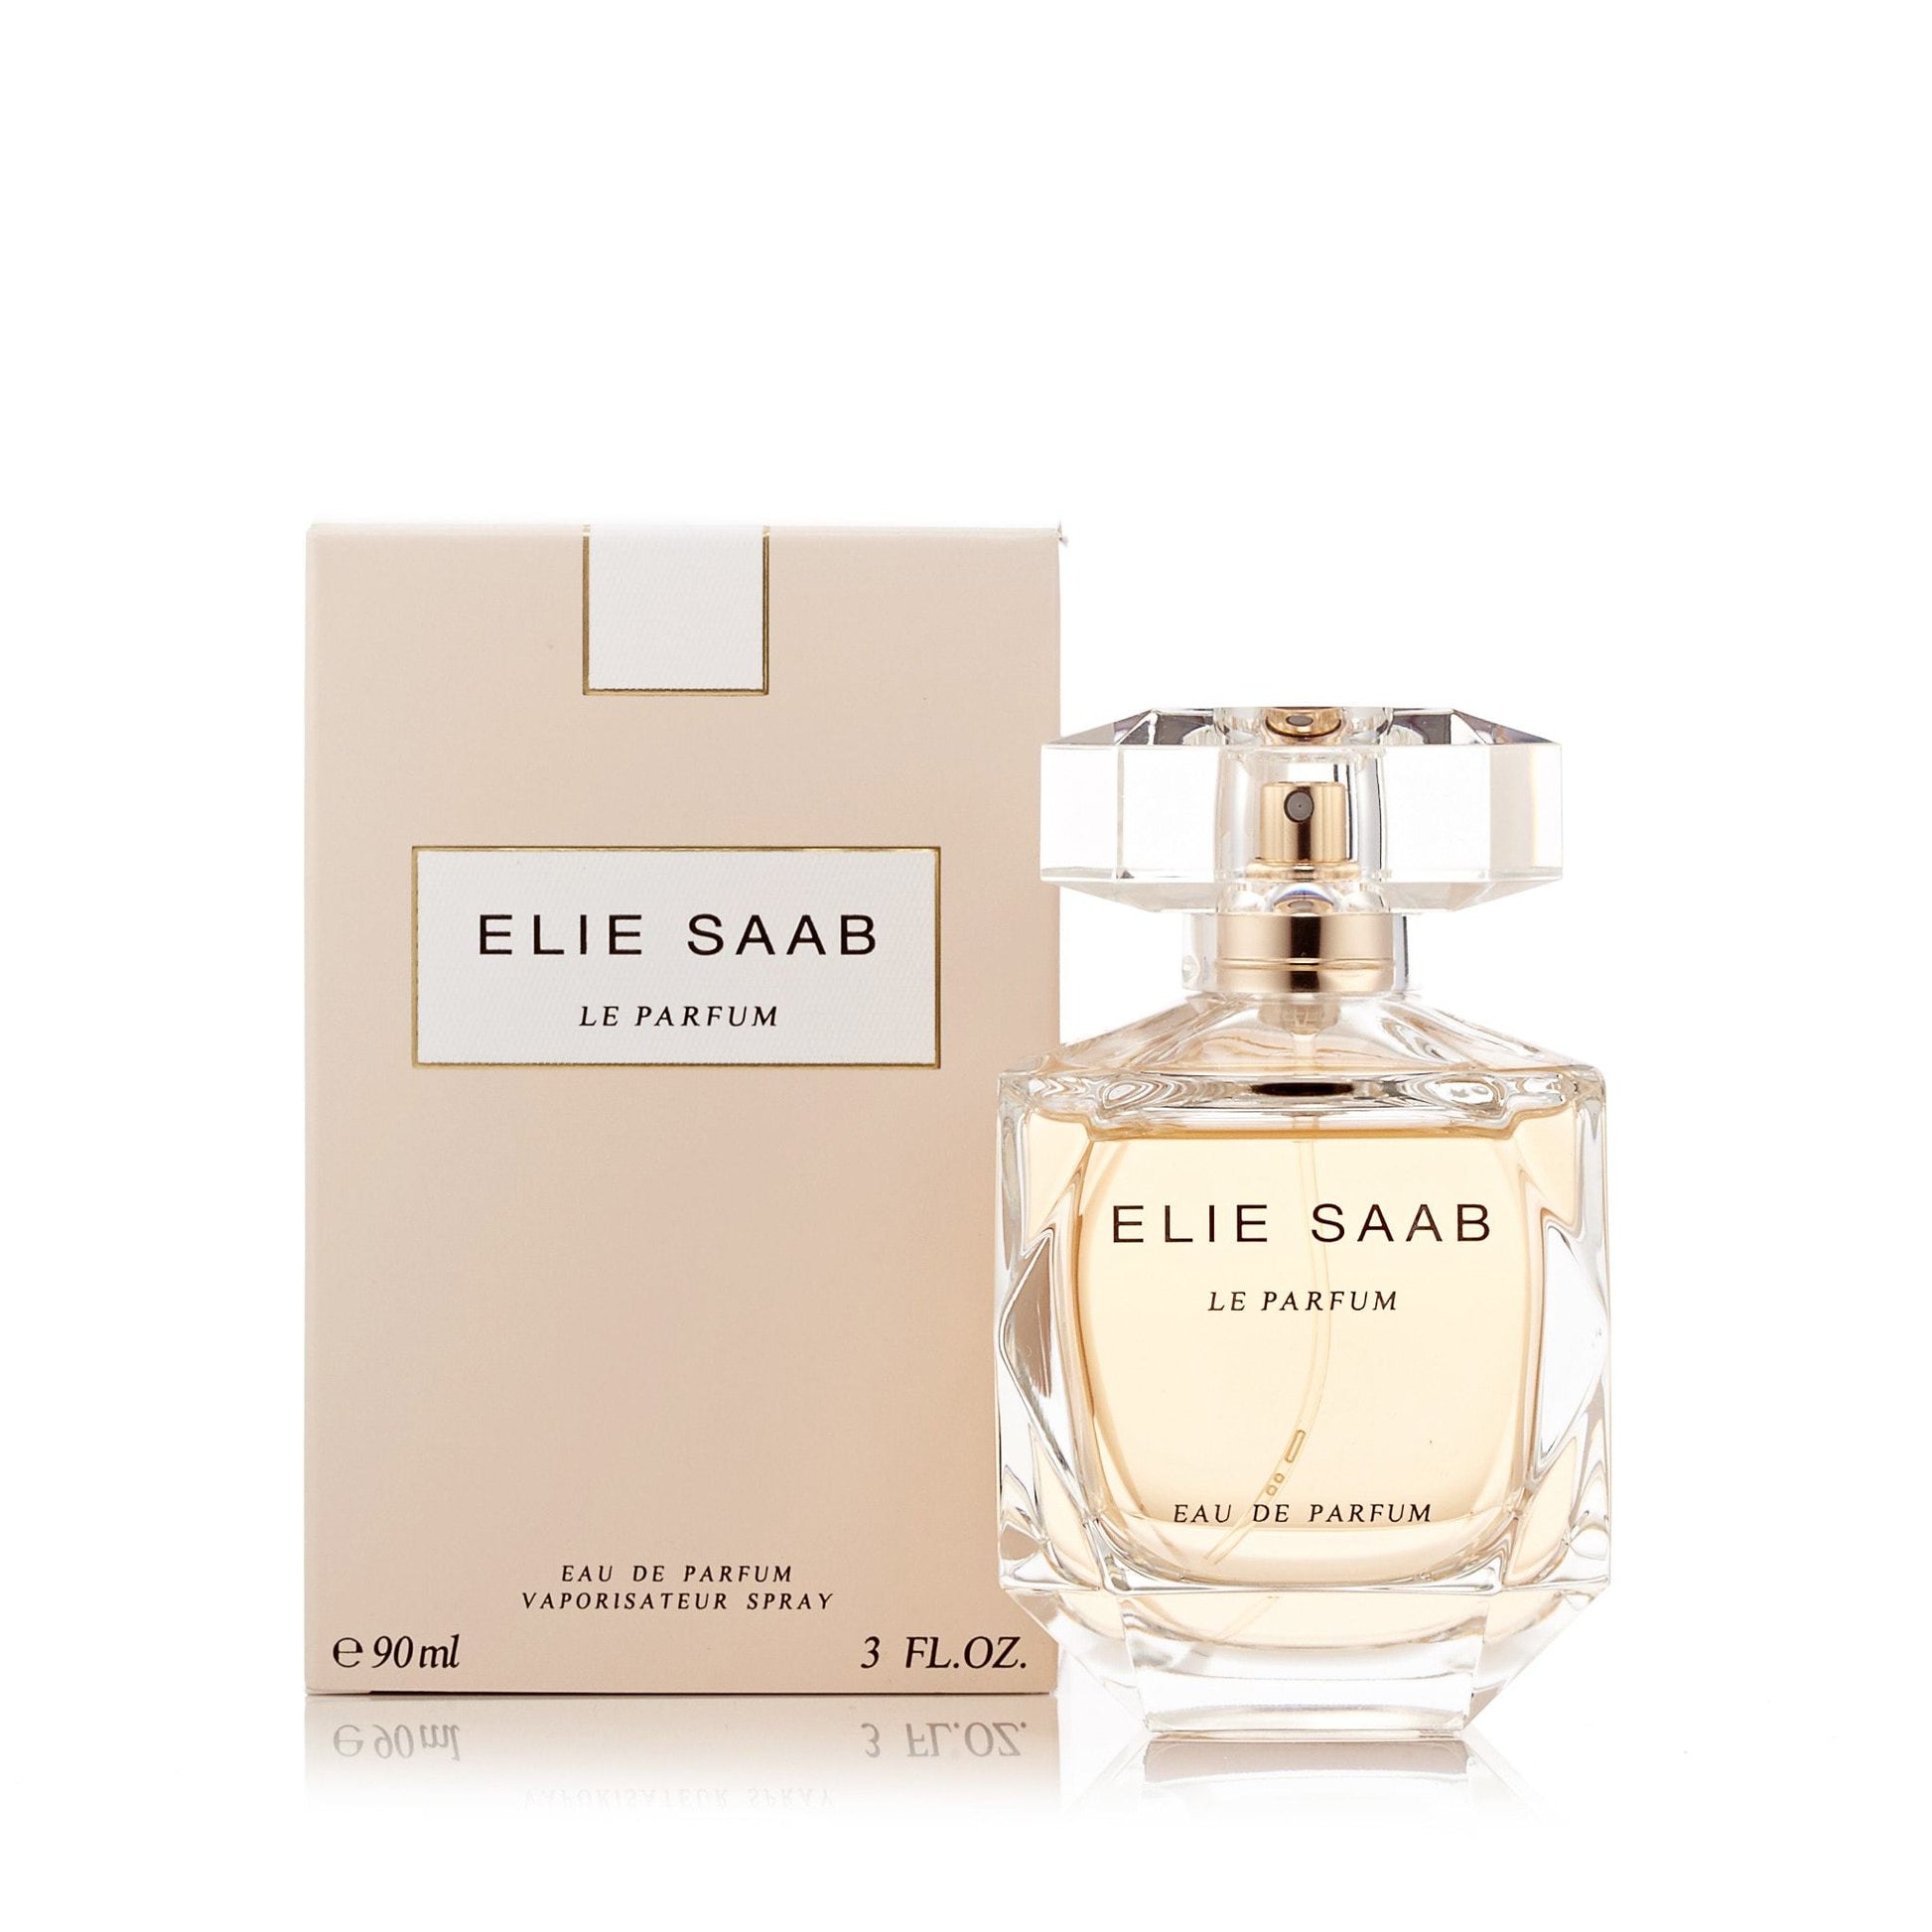 Le Parfum Eau de Parfum Spray for Women by Elie Saab, Product image 2